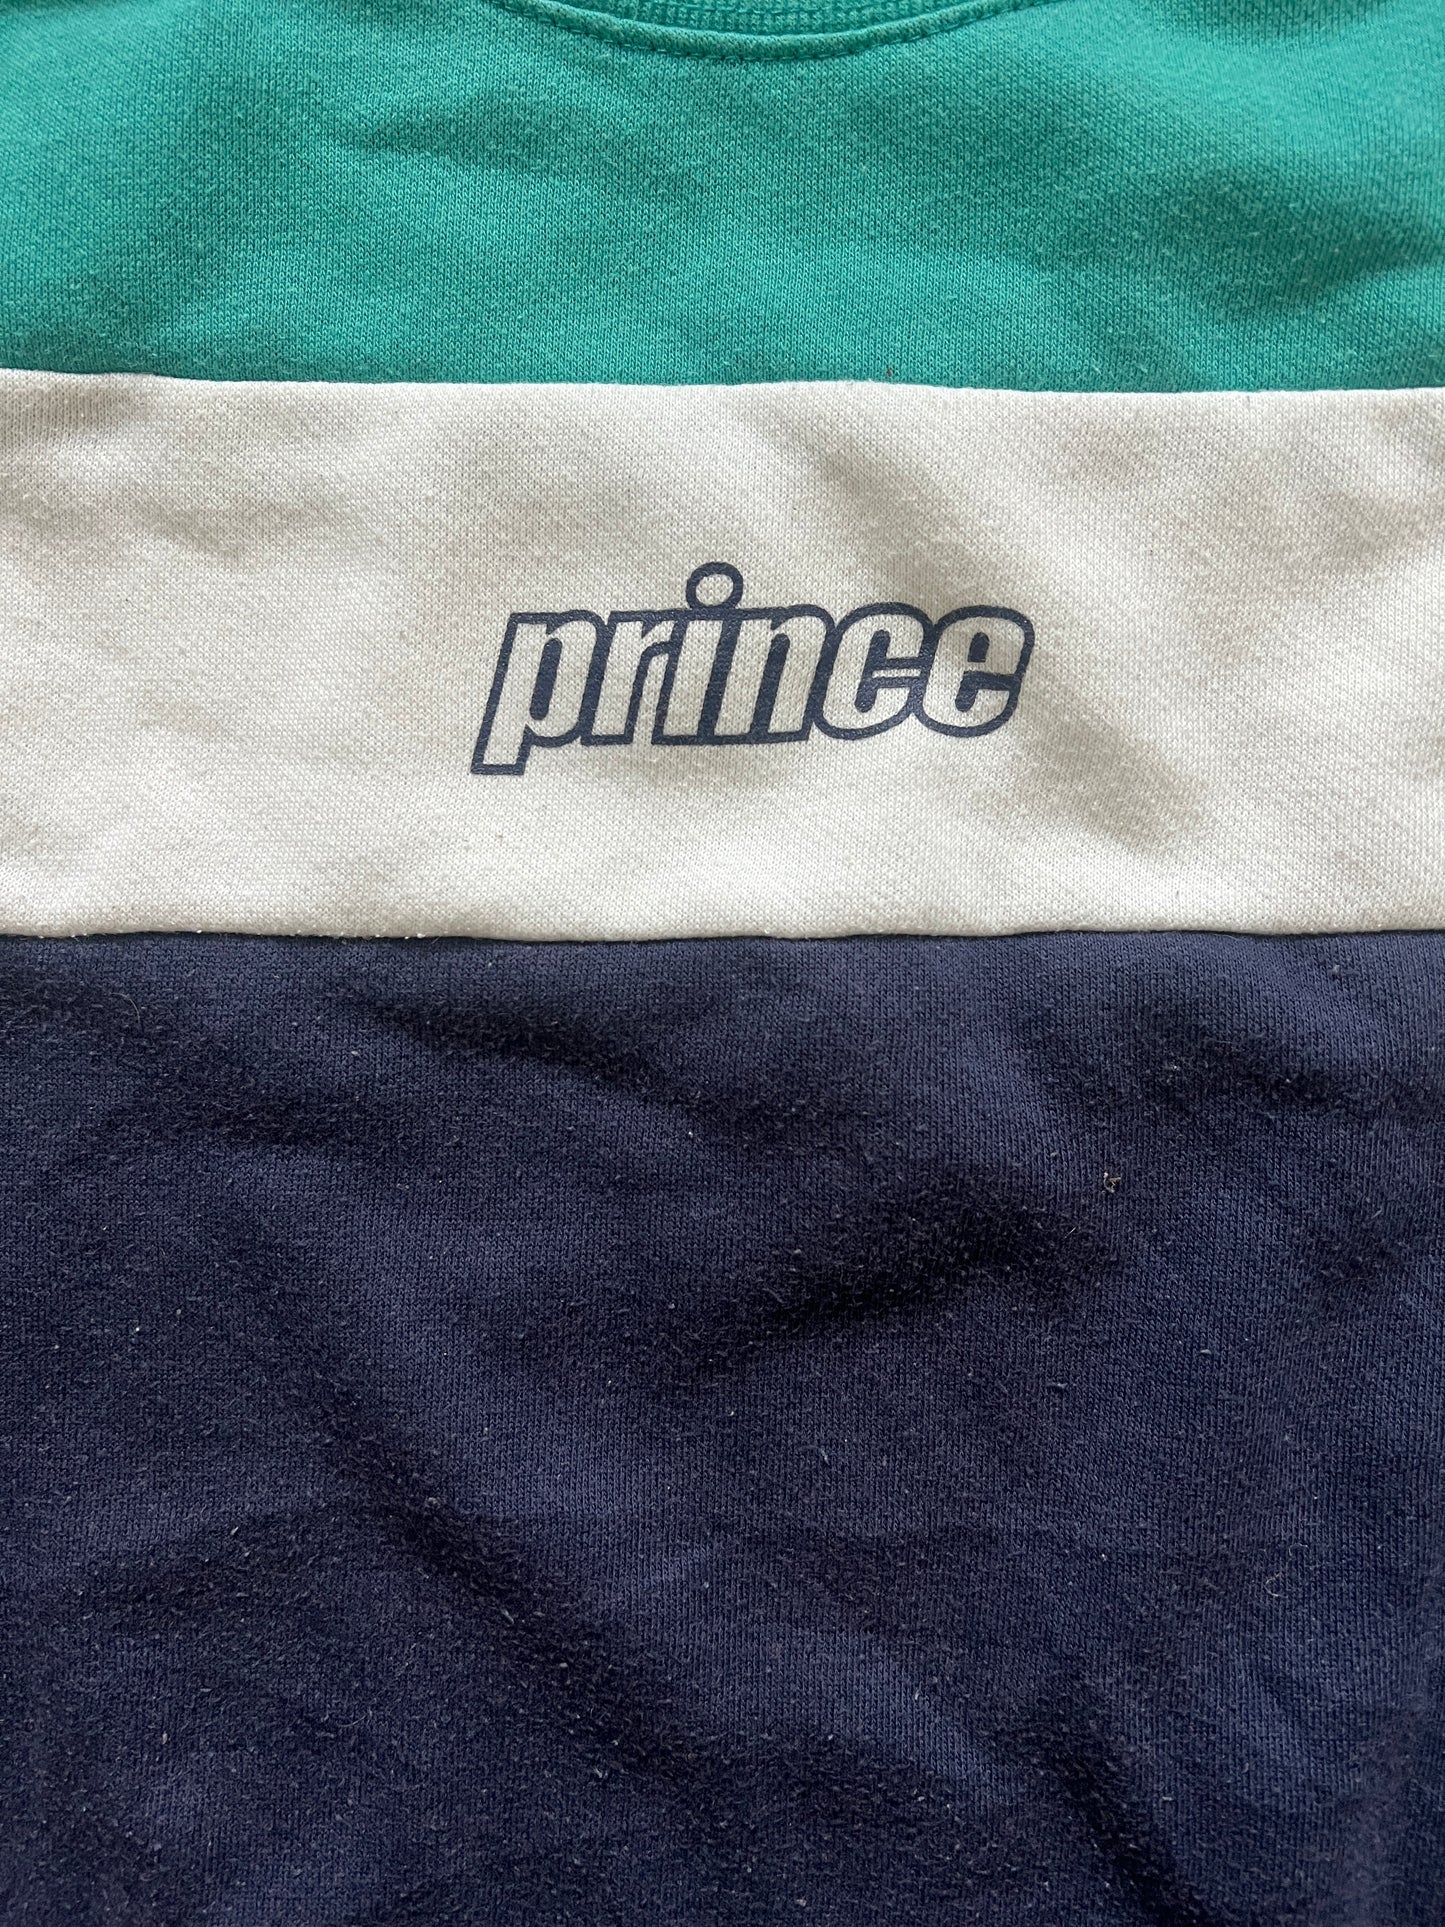 Vintage Prince Crewneck Sweatshirt (circa 2000s)